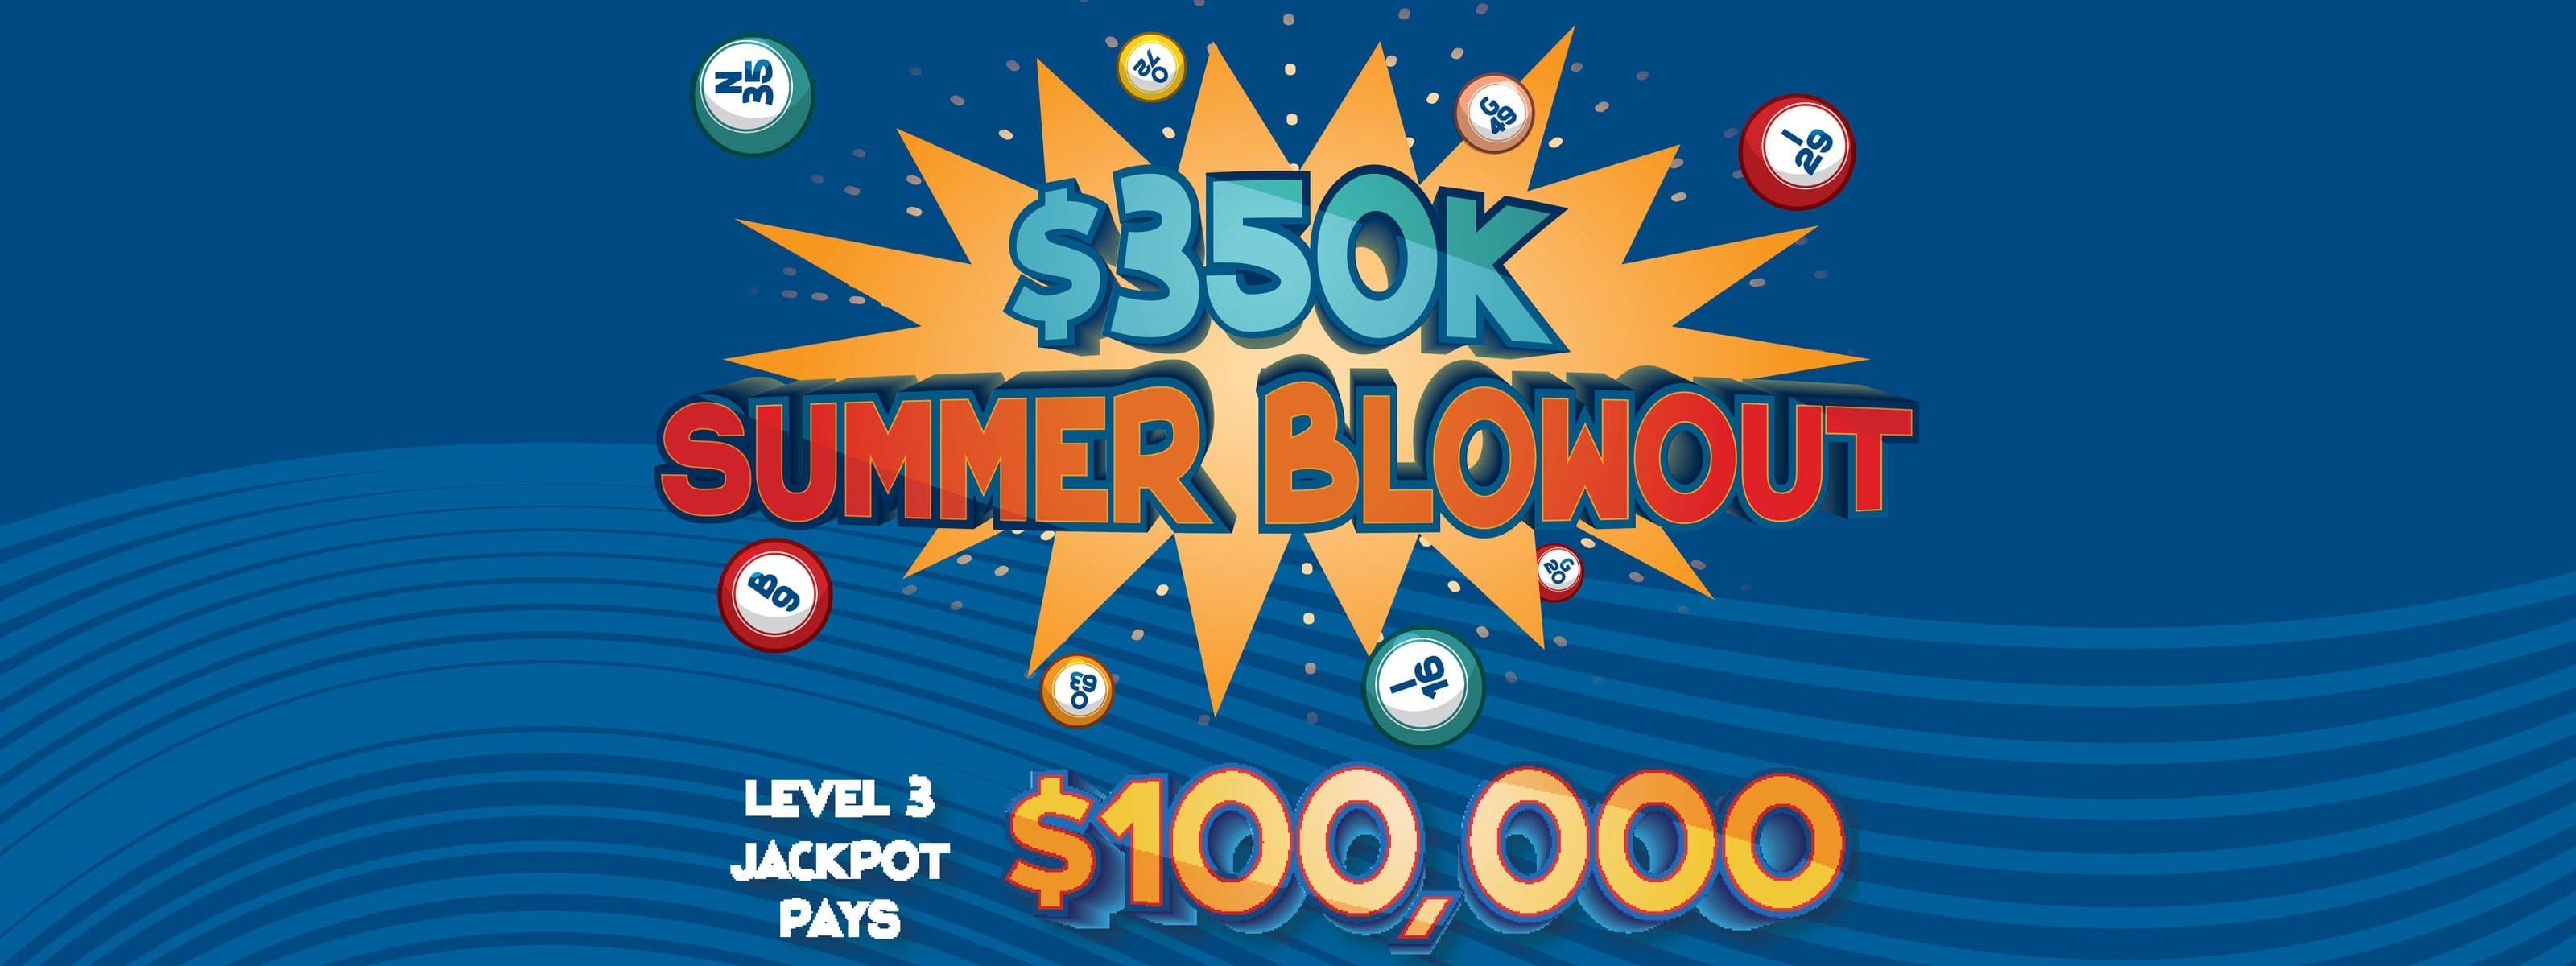 $350K summer blowout